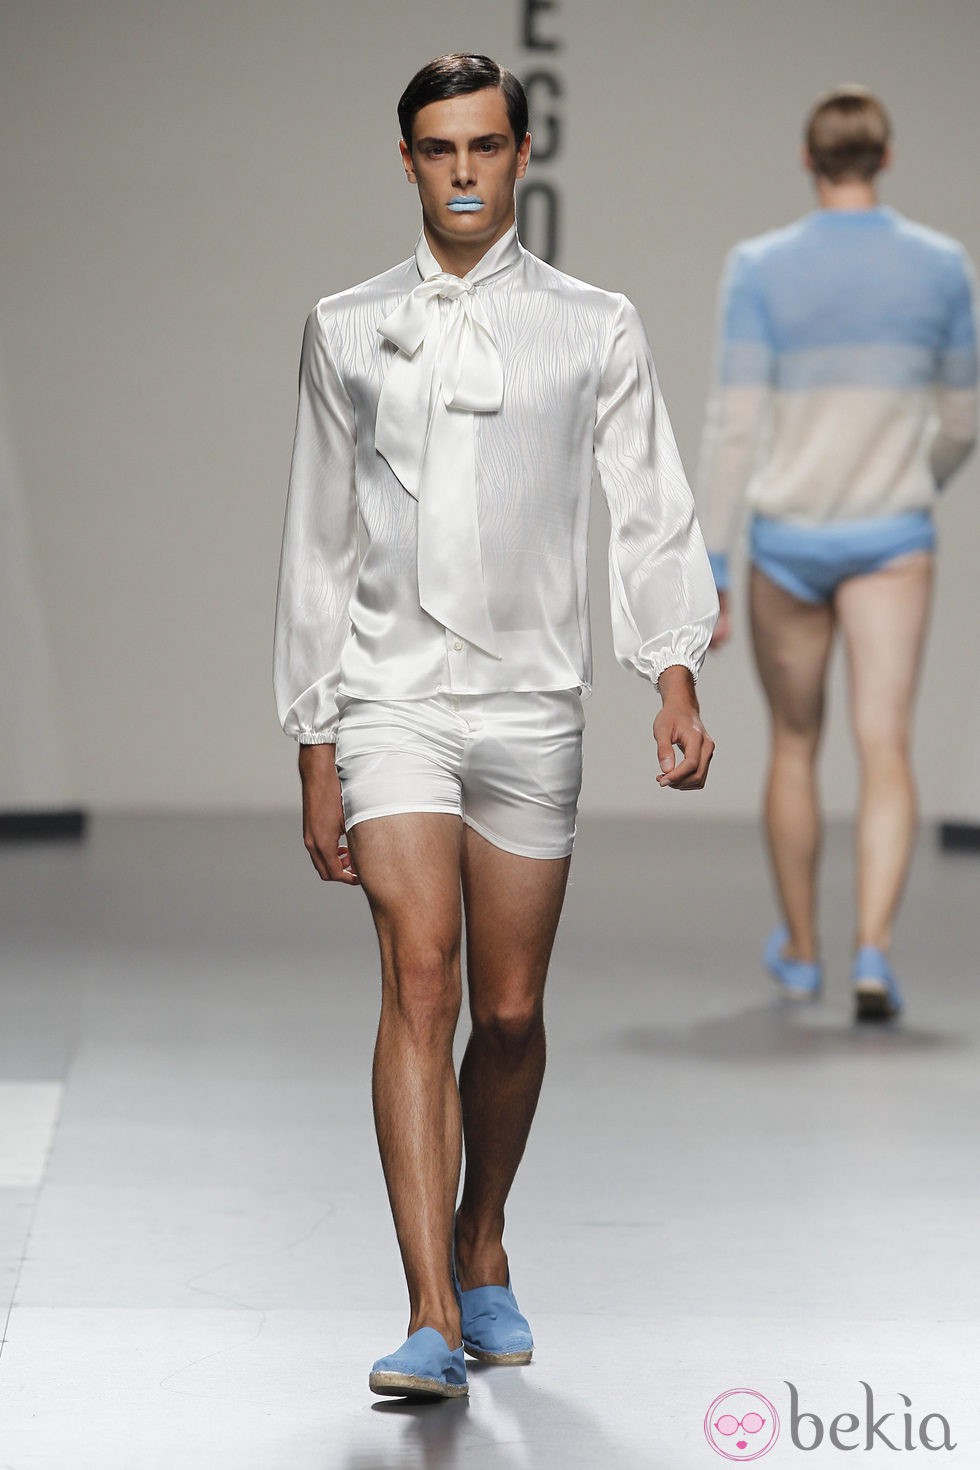 Blusa con lazo y short blanco para hombre de Ibai Labega en Cibeles, colección primavera 2012